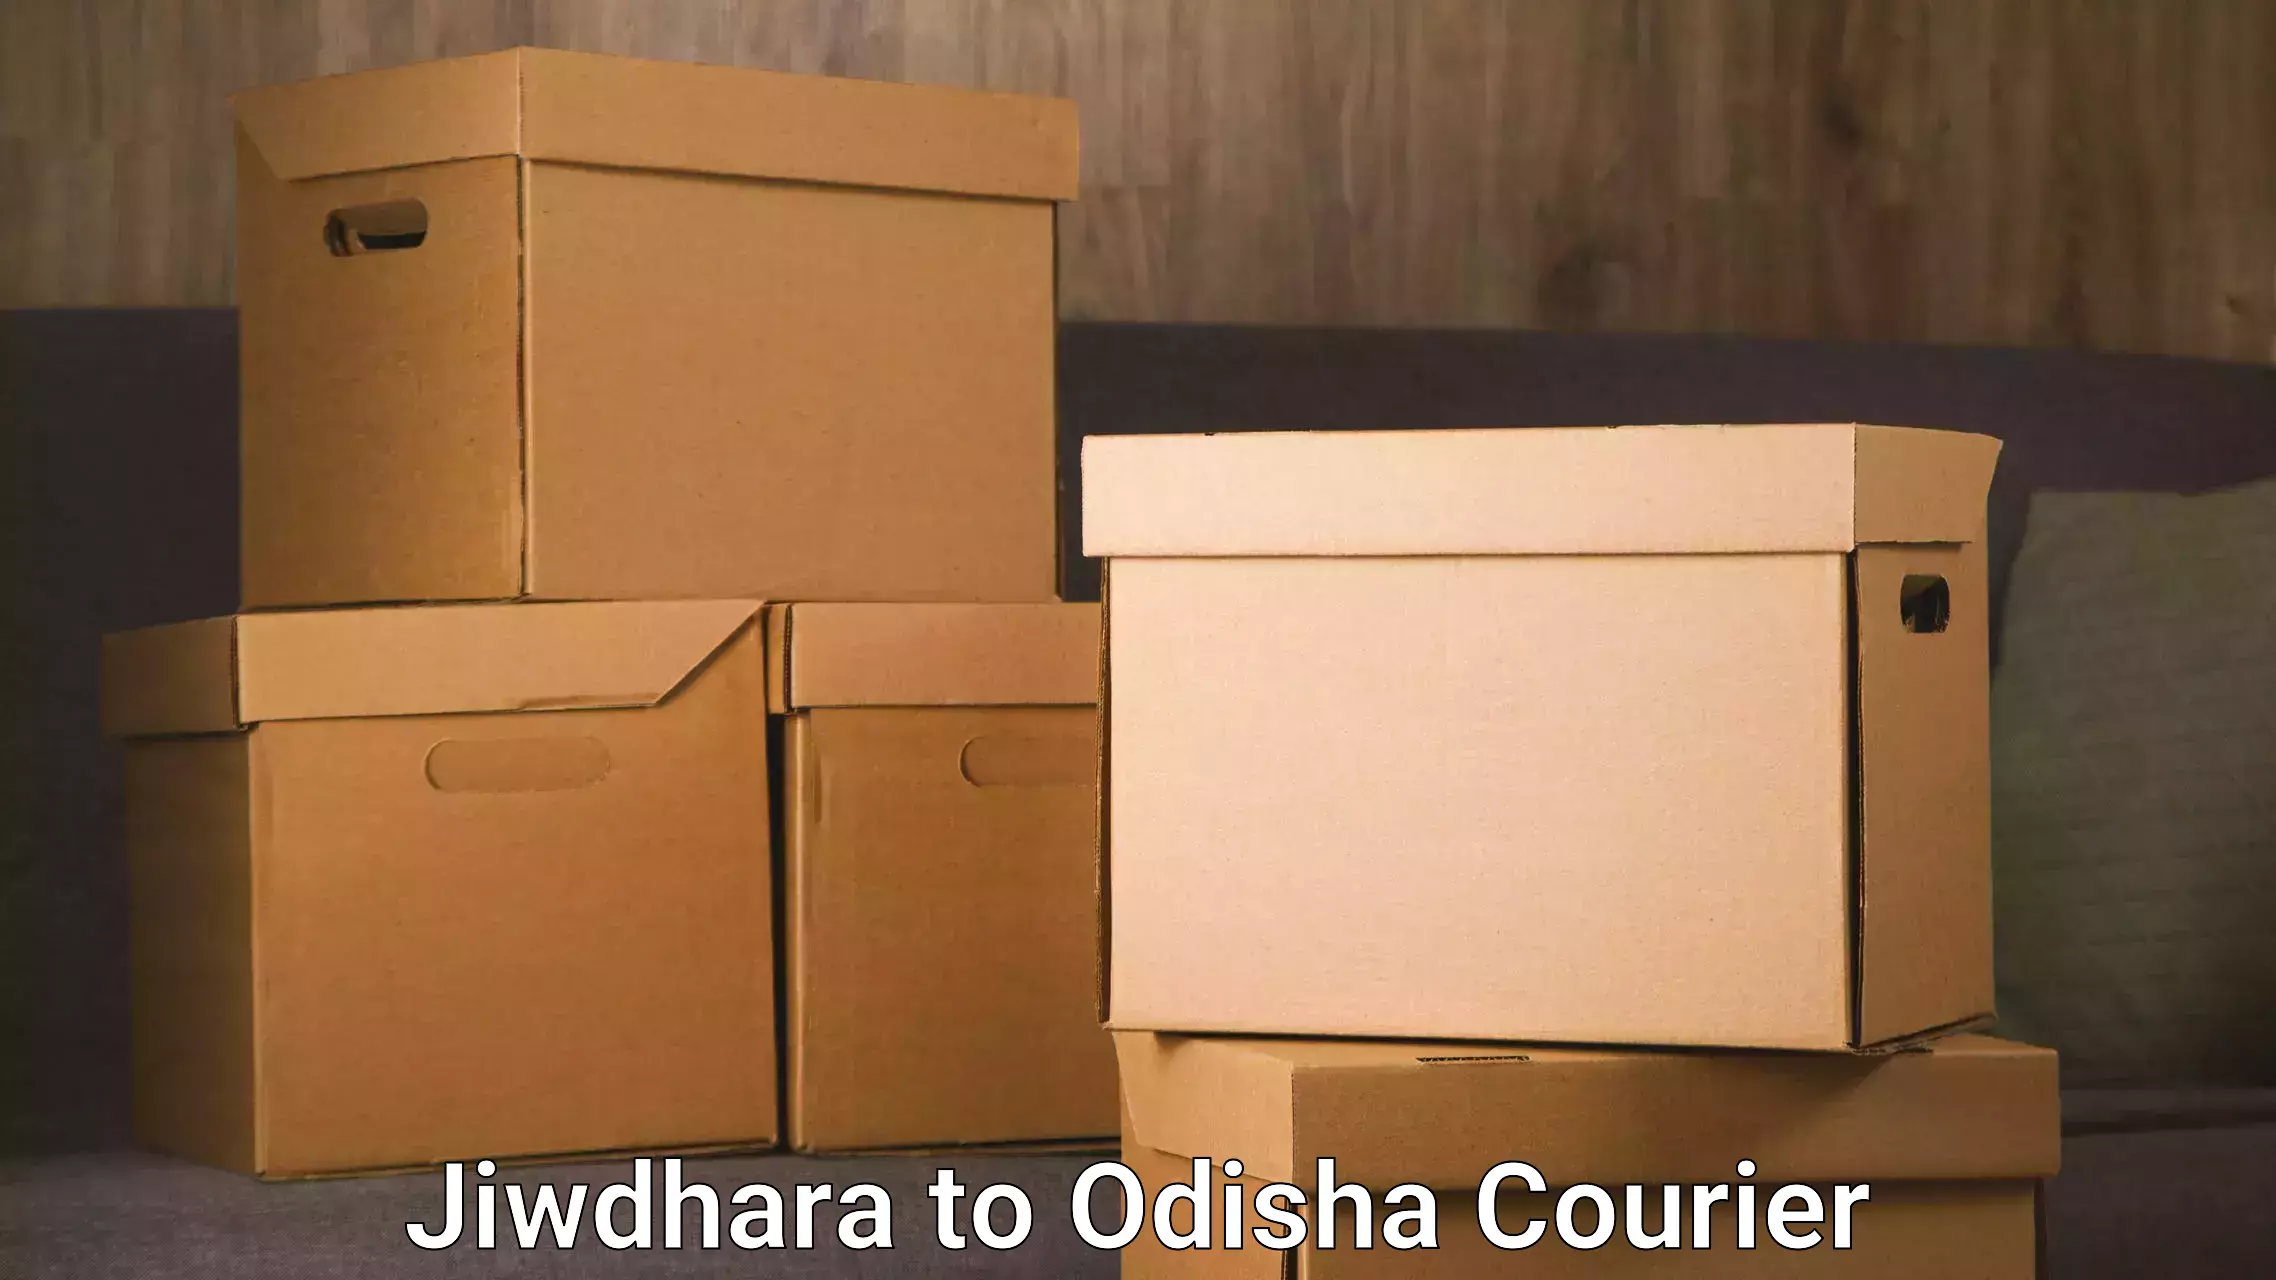 Reliable moving assistance Jiwdhara to Bhubaneswar